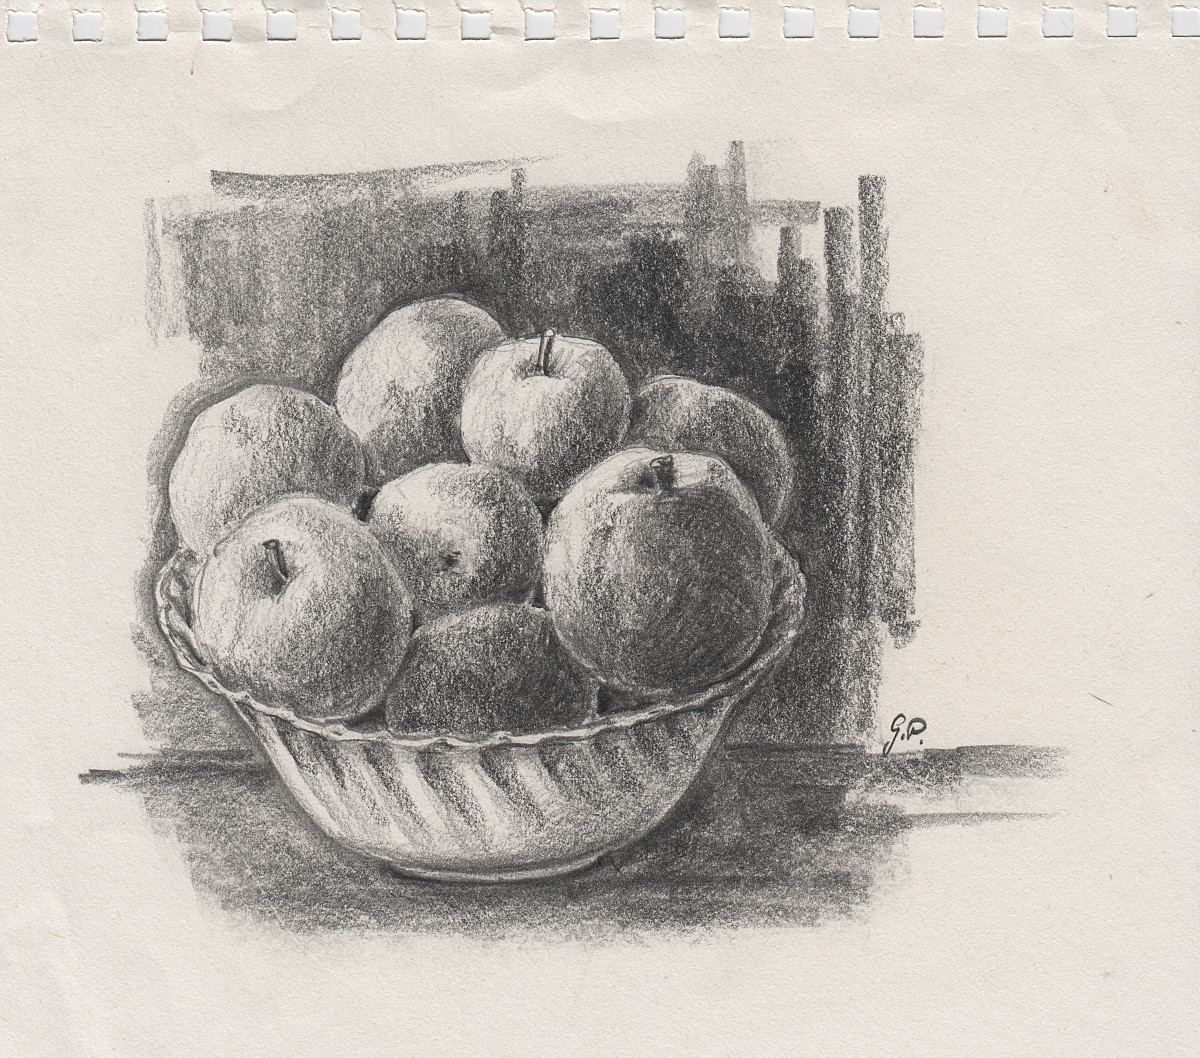 Porzellanschale mit Äpfeln